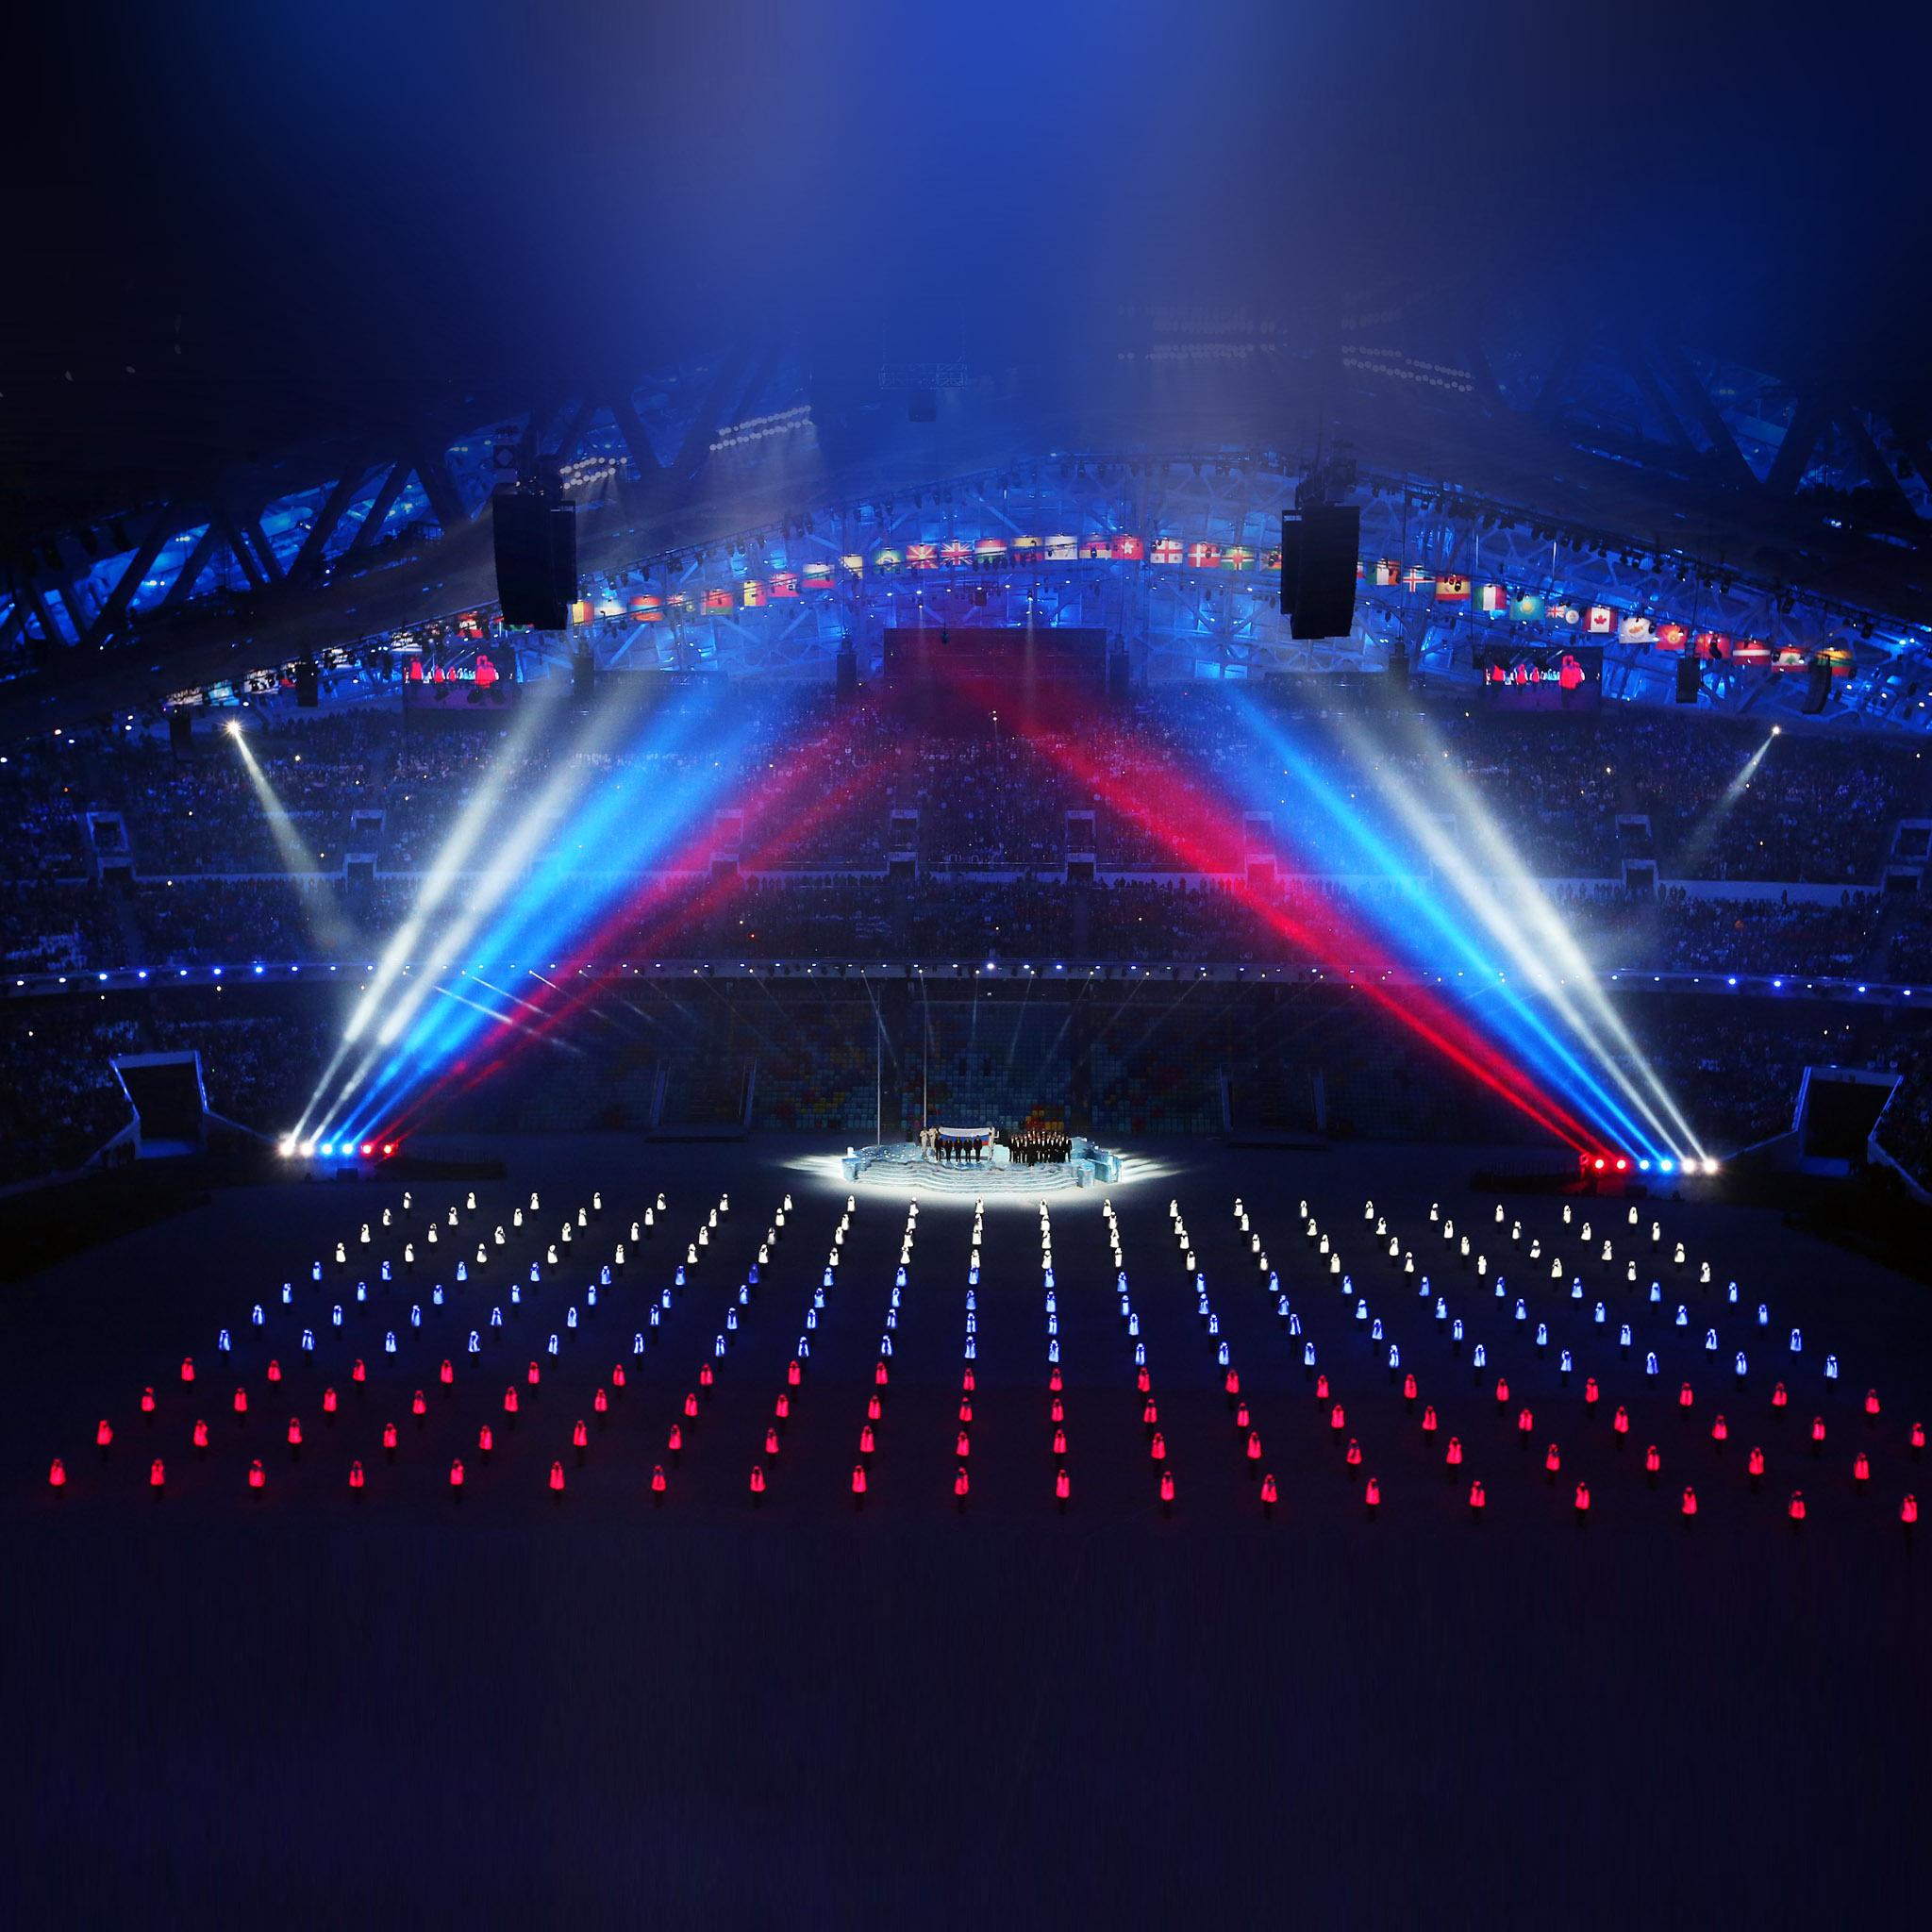 Sochi 2014 Winter Olympics Concert iPad Air Wallpaper Download